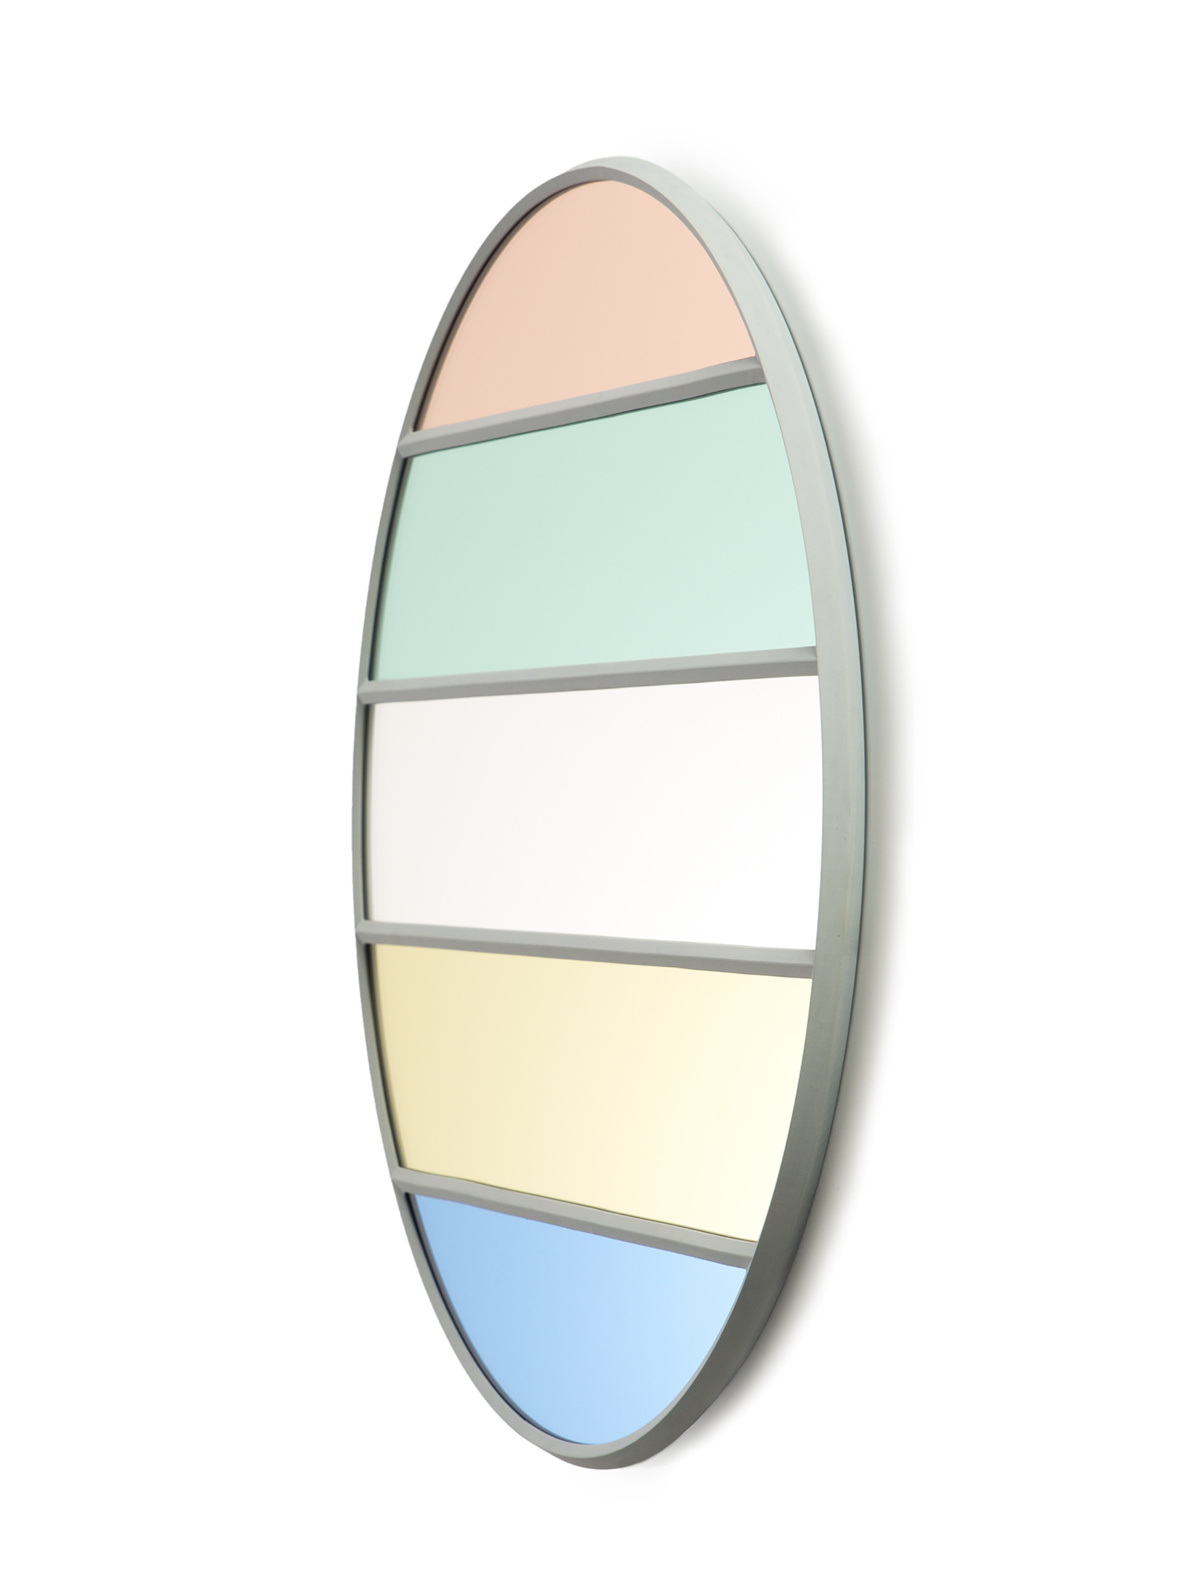 Vitrail Wandspiegel, oval, 50 x 60 cm, hellgrau / mehrfarbig